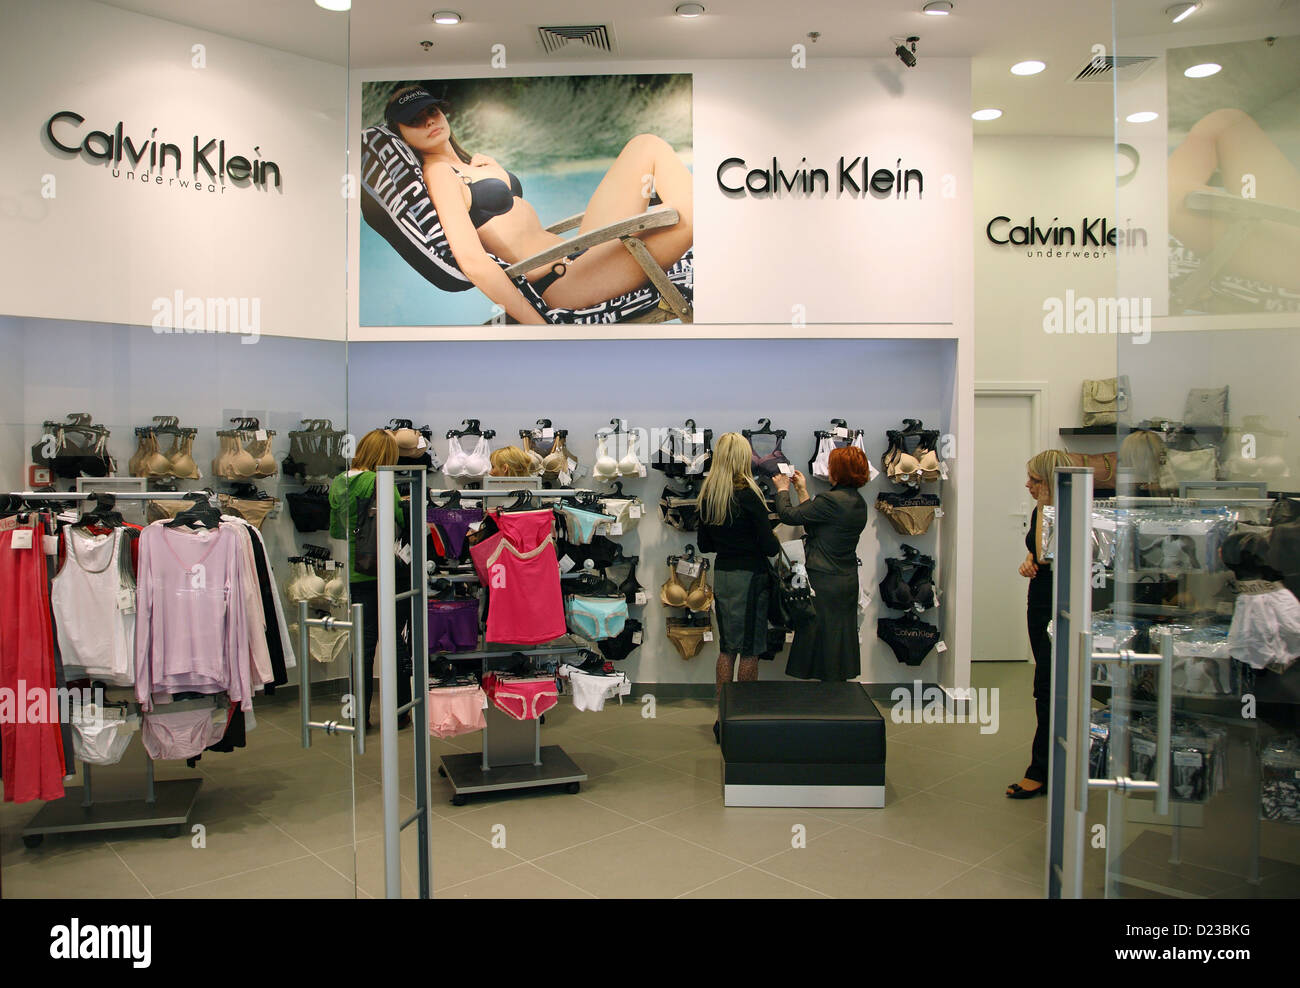 Posen, Polen, von Calvin Klein Underwear im Einkaufszentrum Galeria MALTA  Stockfotografie - Alamy